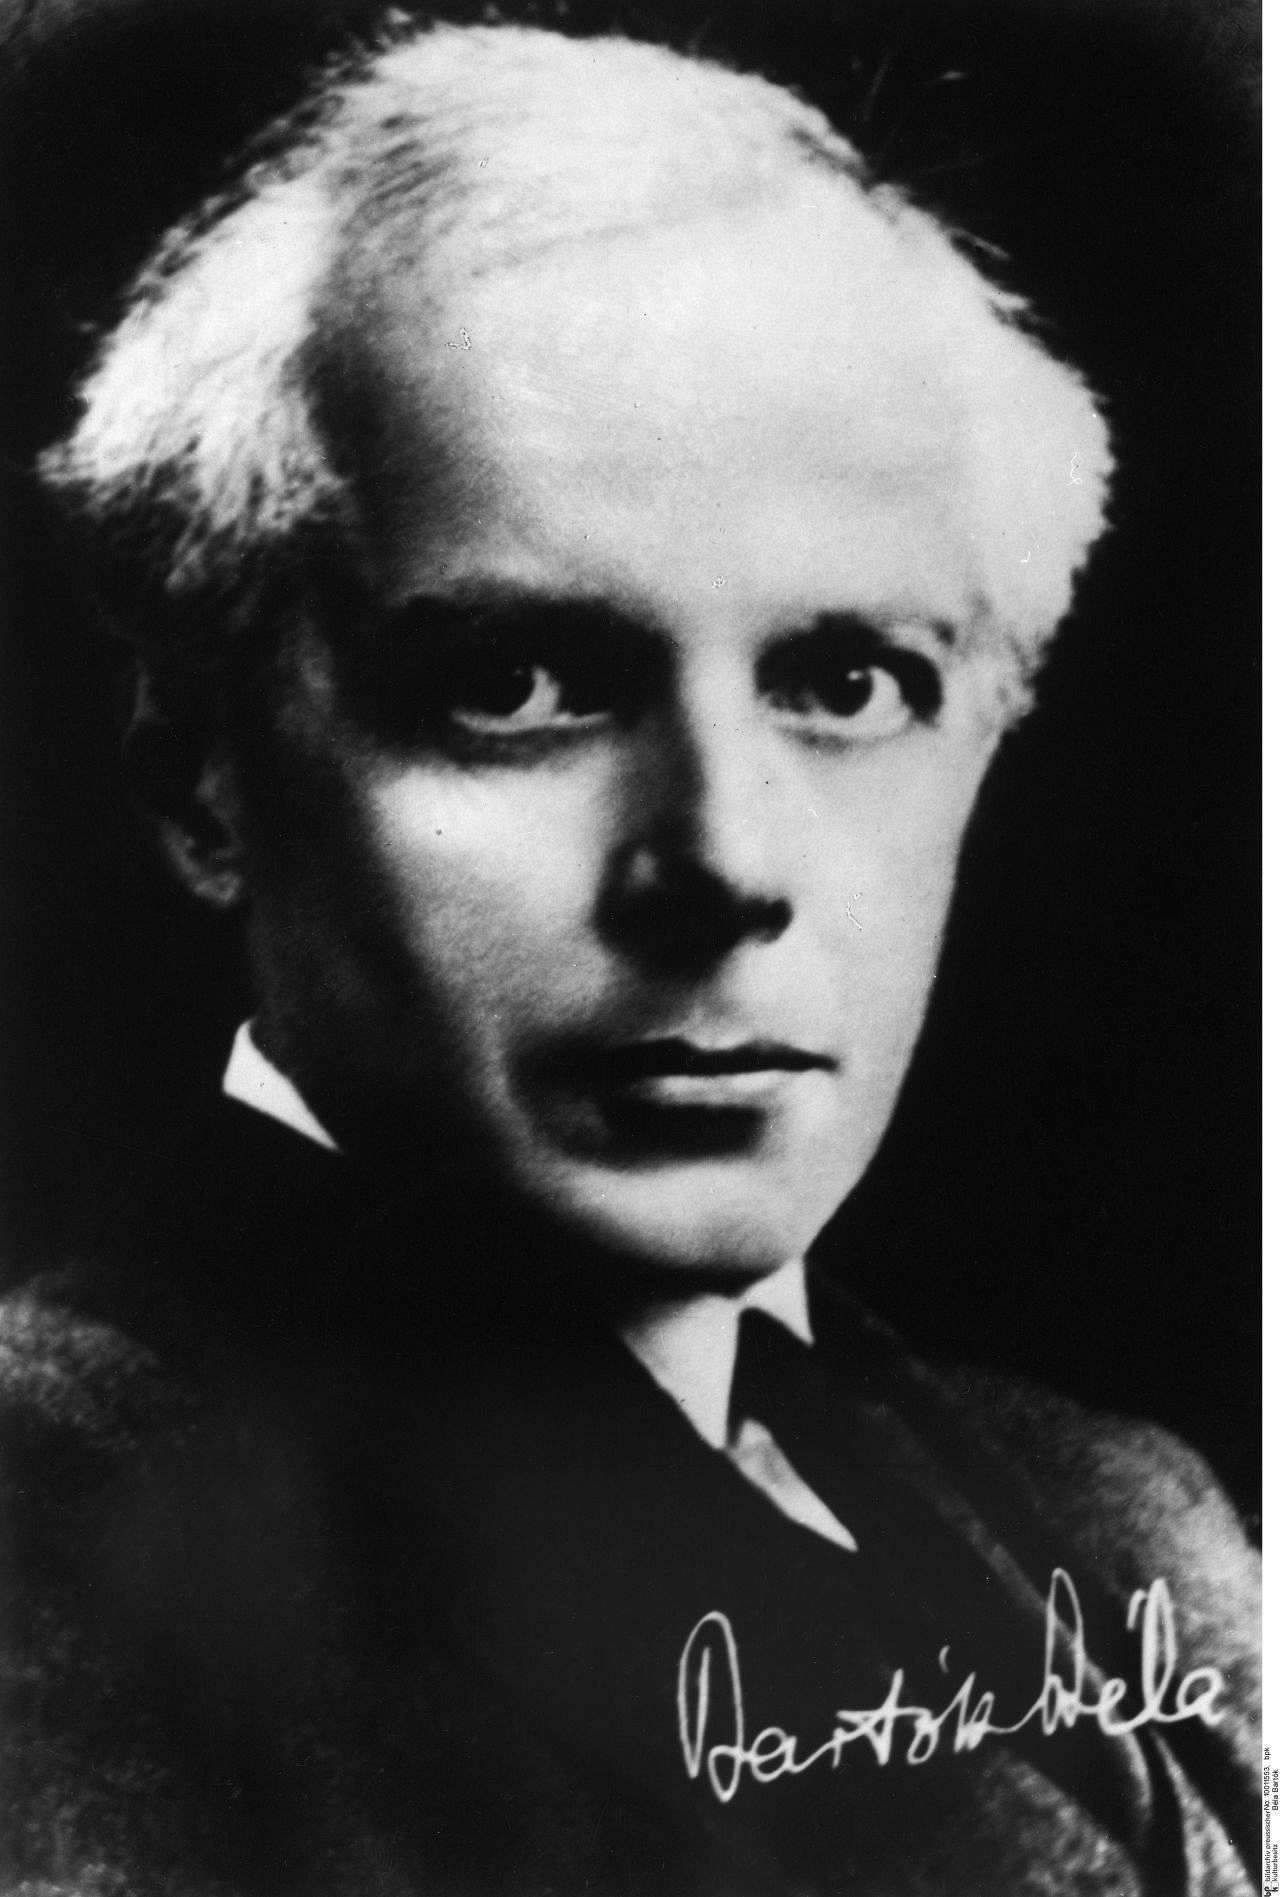 Porträtfoto des ungarischen Komponisten und Pianisten Béla Bartók, ca. 1930.